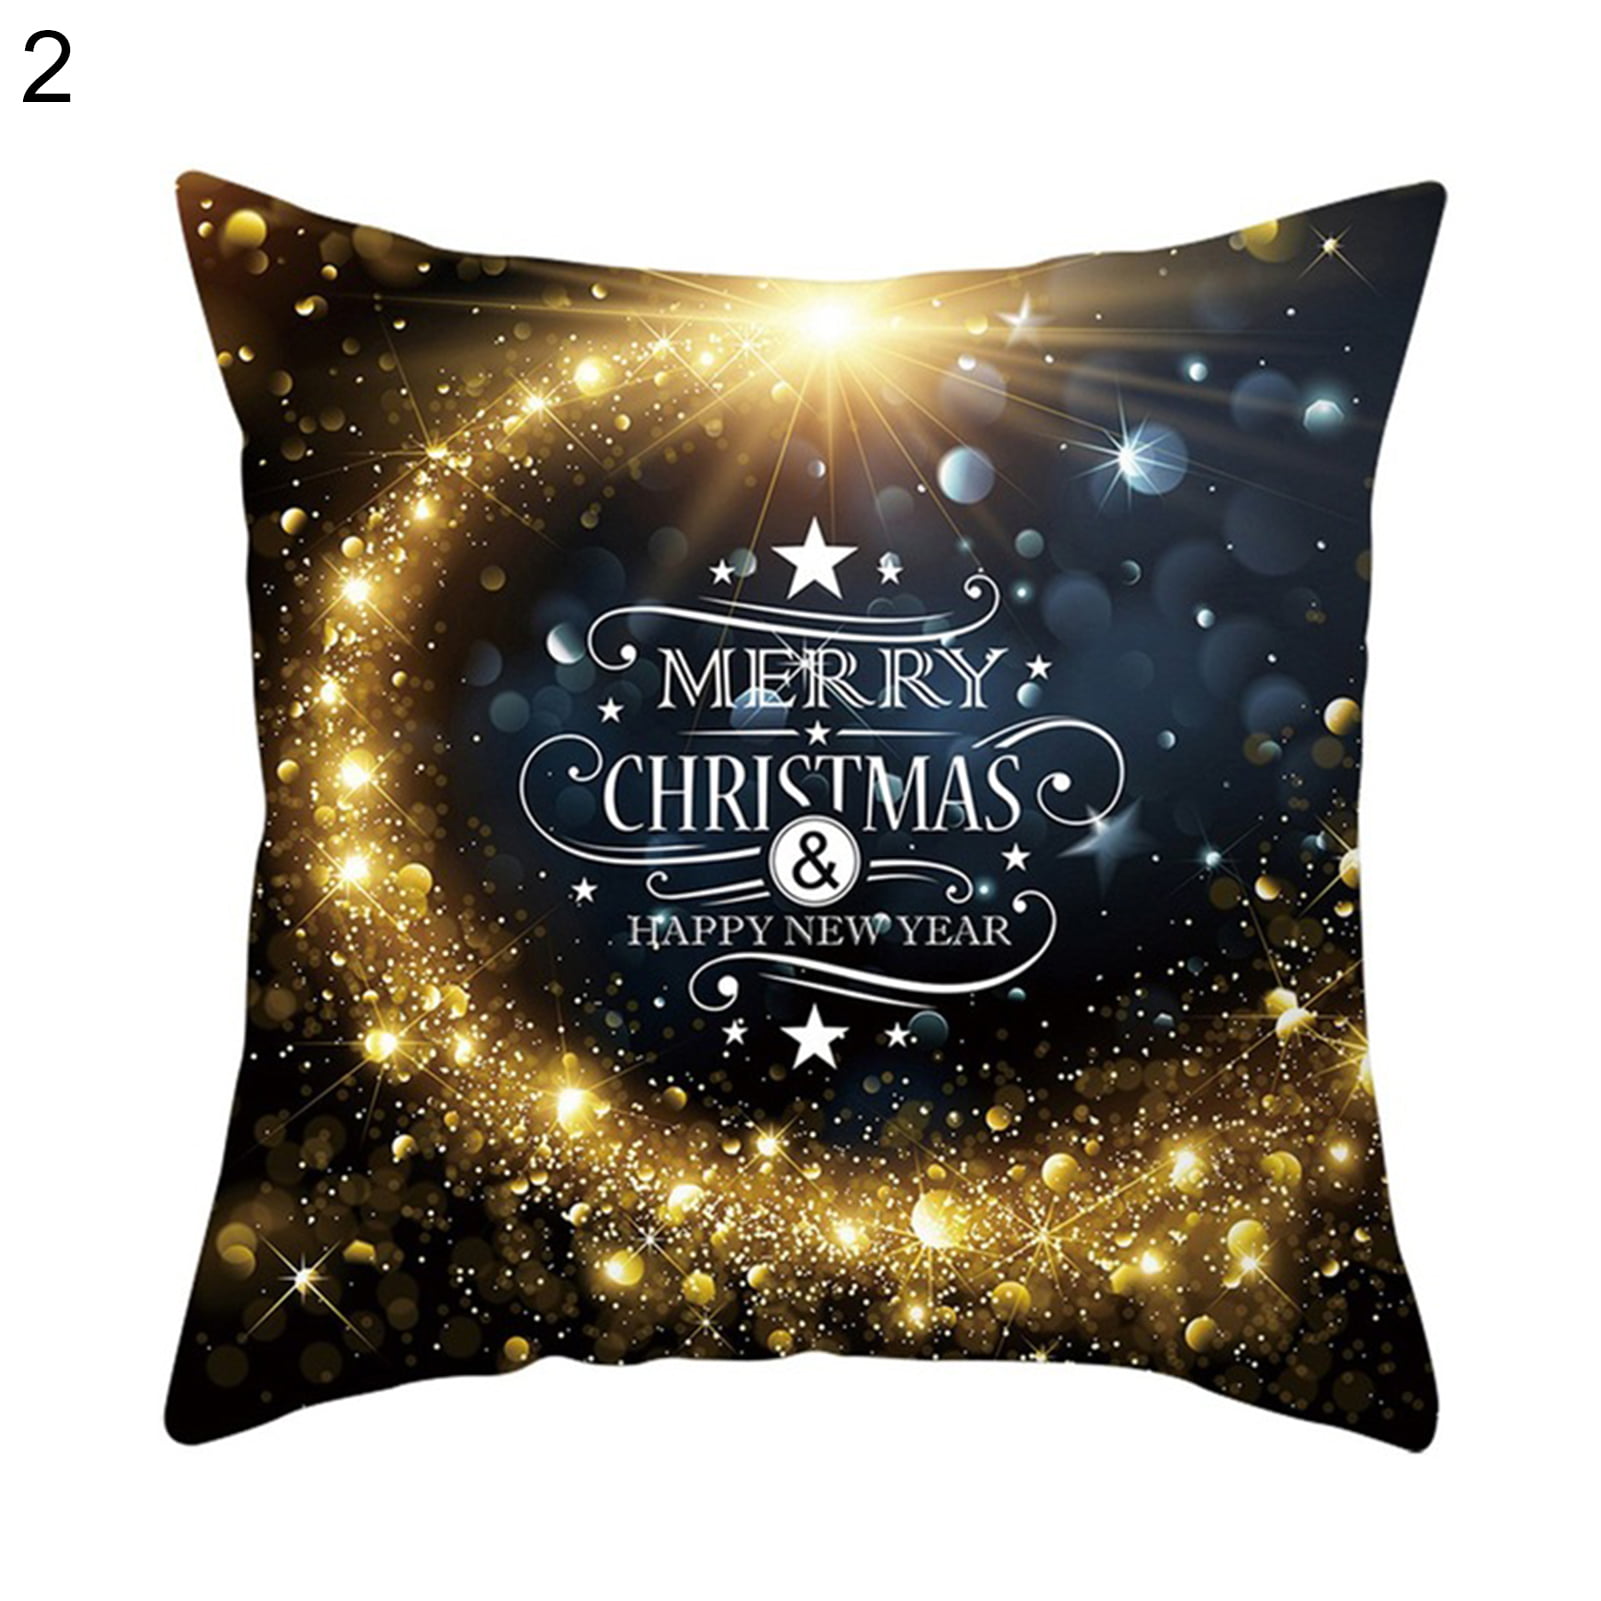 Merry Christmas Pillow Case Cover Throw Xmas Gold Black Cushion Case Home Decor